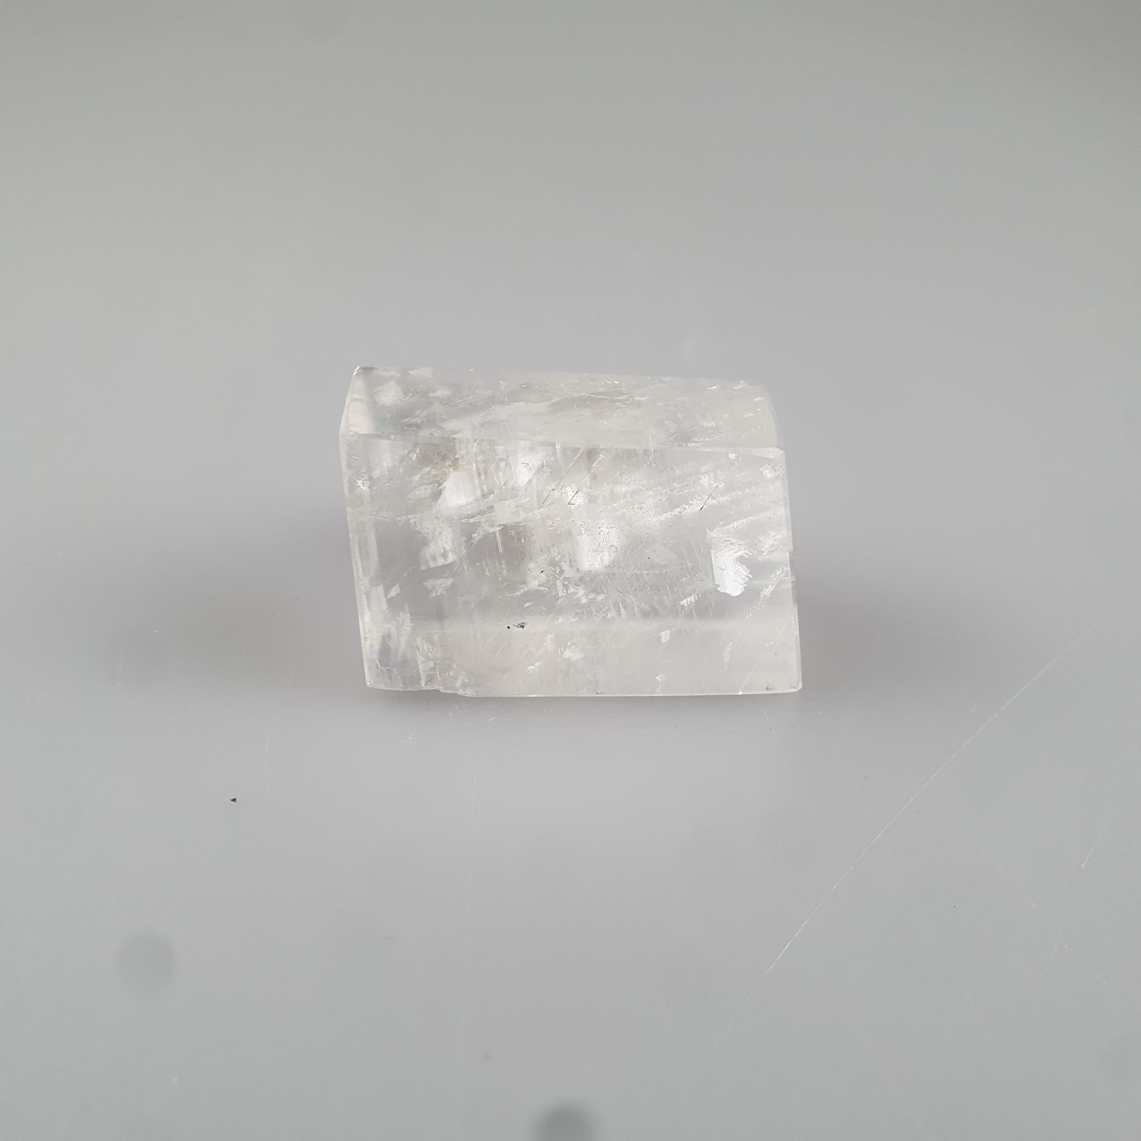 Miniaturfigurine eines Bären auf Eisscholle - kleiner Bär aus Silber auf Sockel aus Bergkristall st - Image 5 of 6